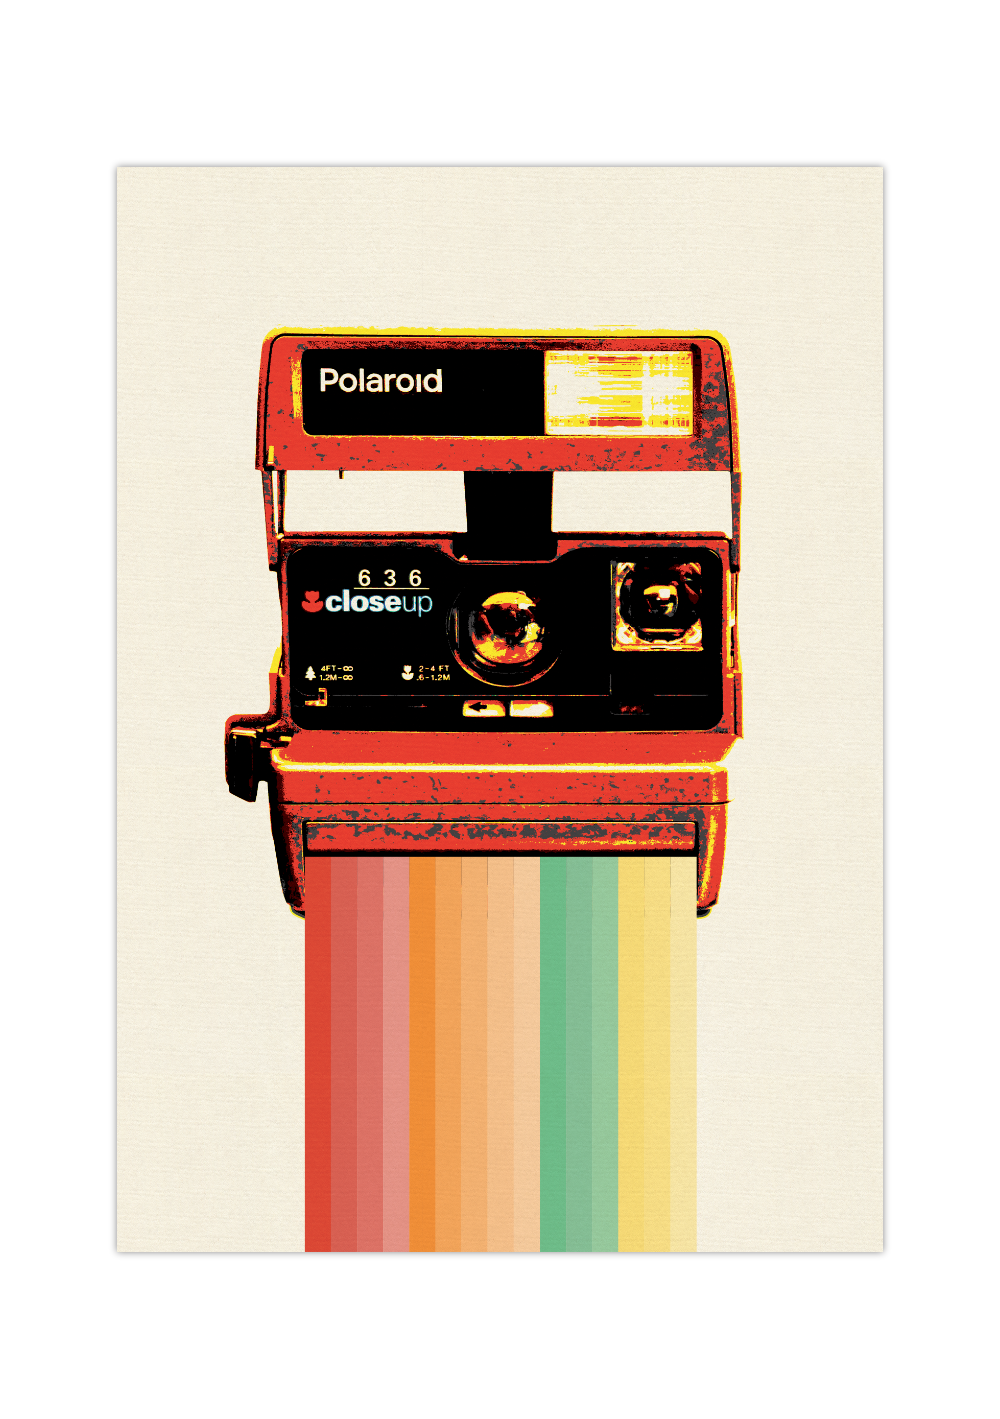 Das Poster zeigt eine alte Polaroidkamera mit einem Regenbogen als Bildausgabe. 